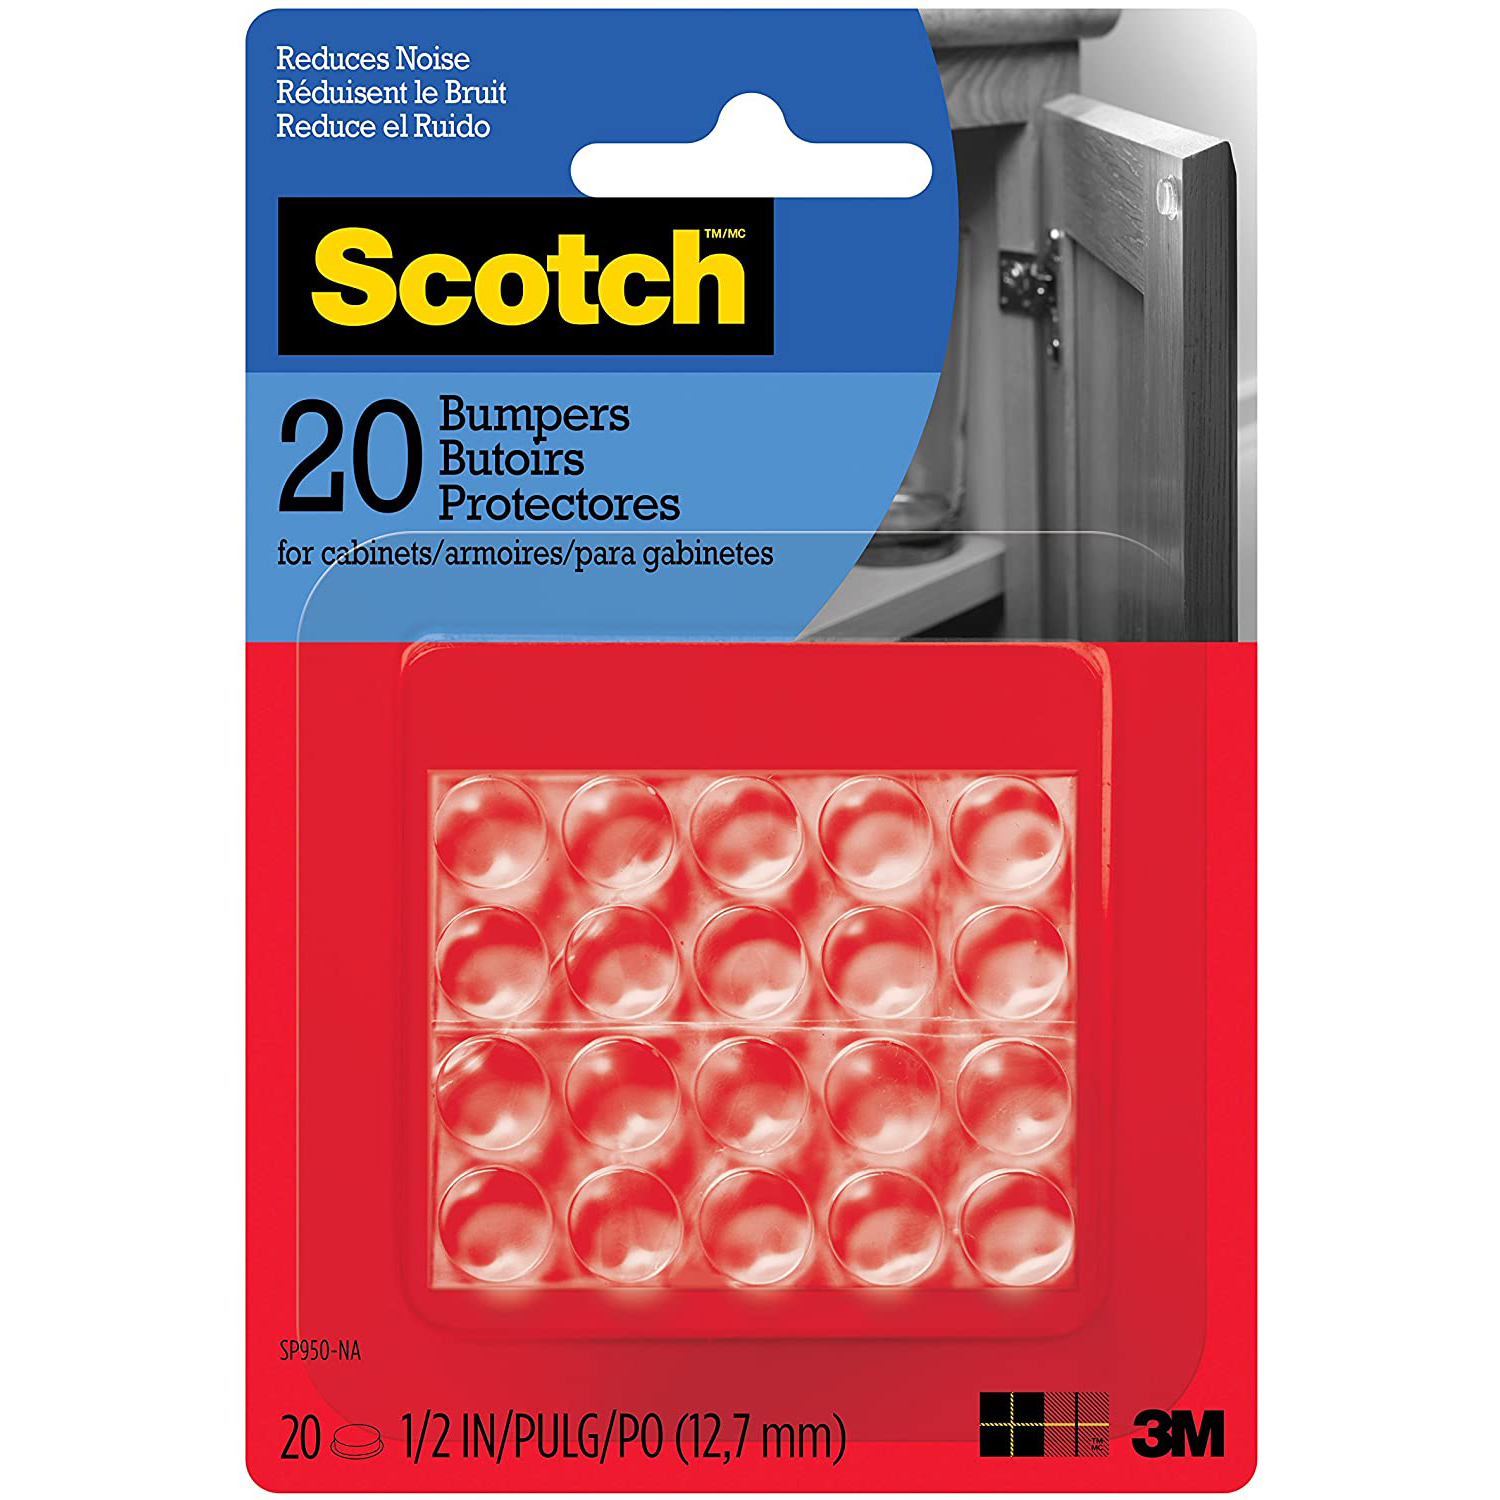 3M Scotch Bumpon Self-Stick Rubber Pad Bumpers